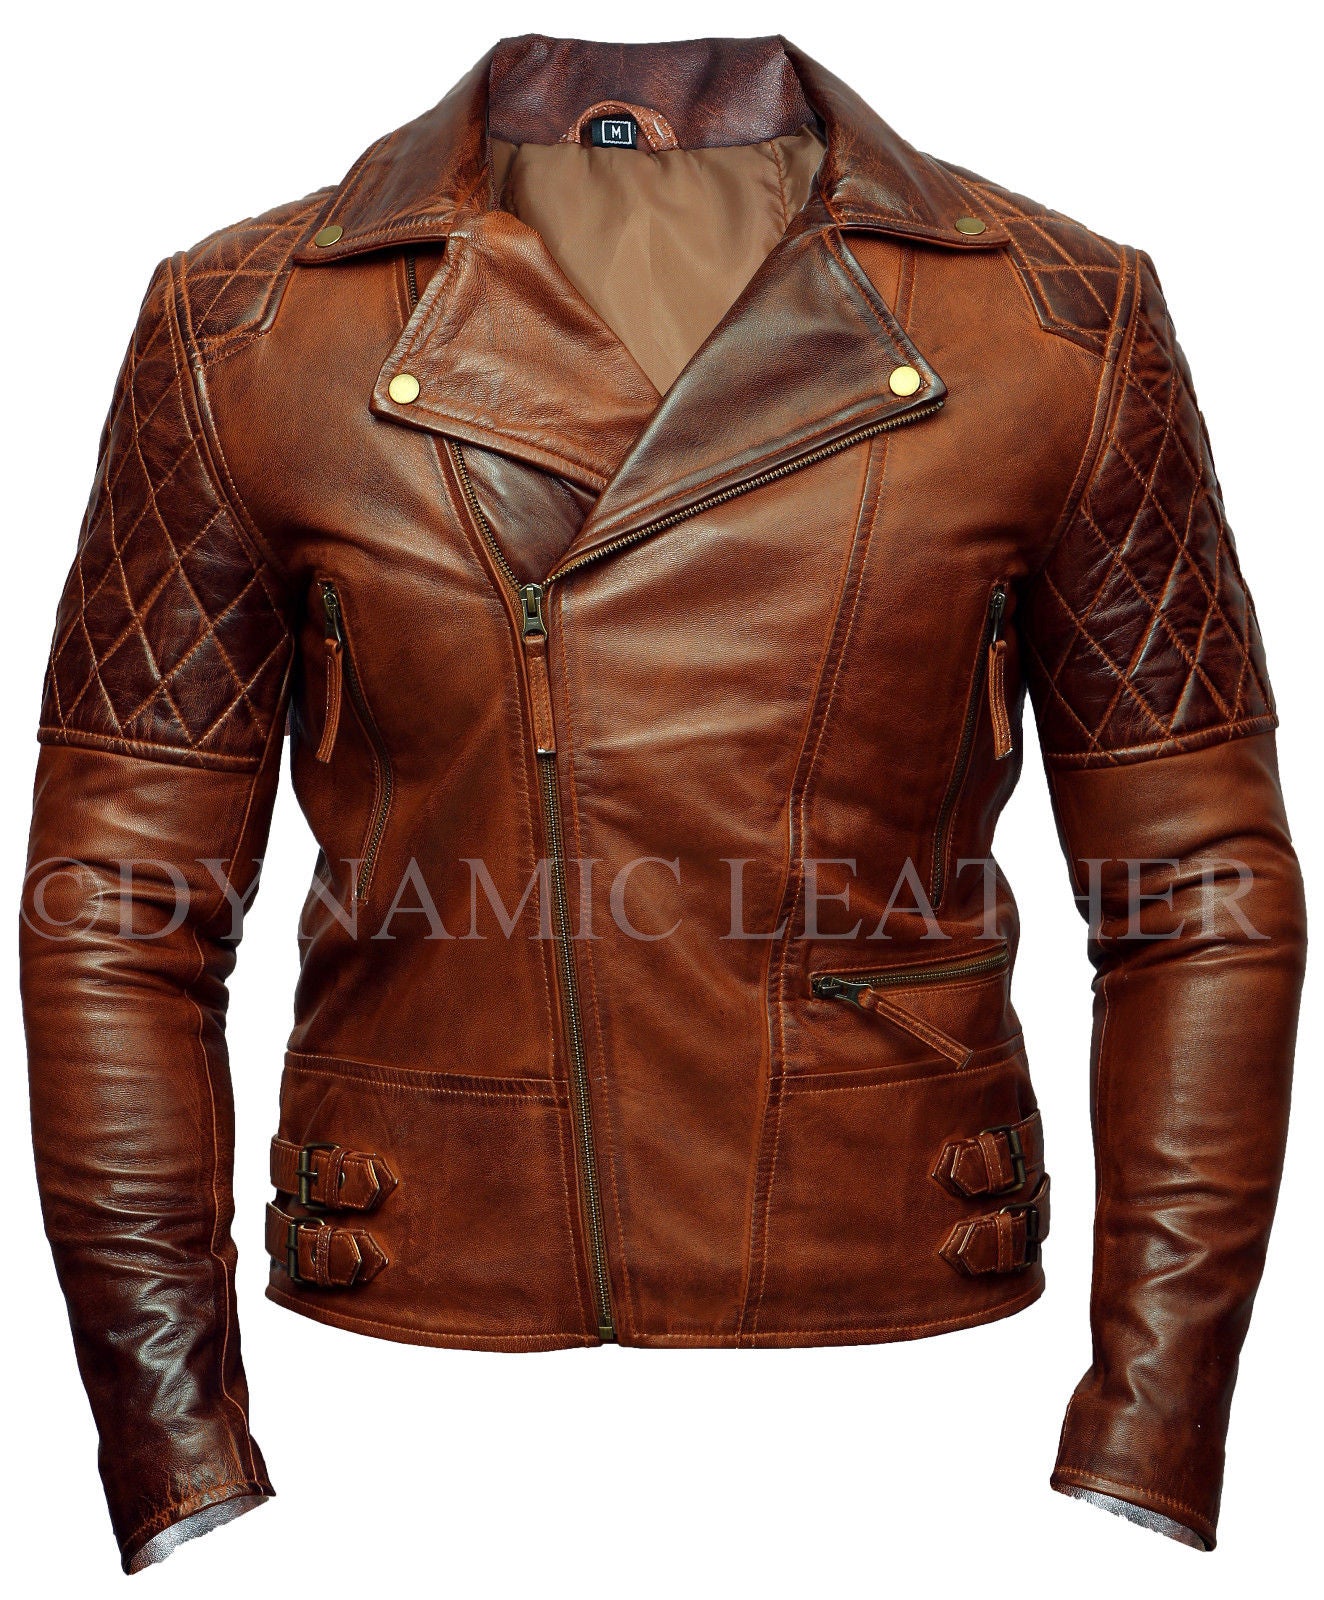 Mens Biker Motorcycle Vintage Distressed Brown Real Leather Jacket